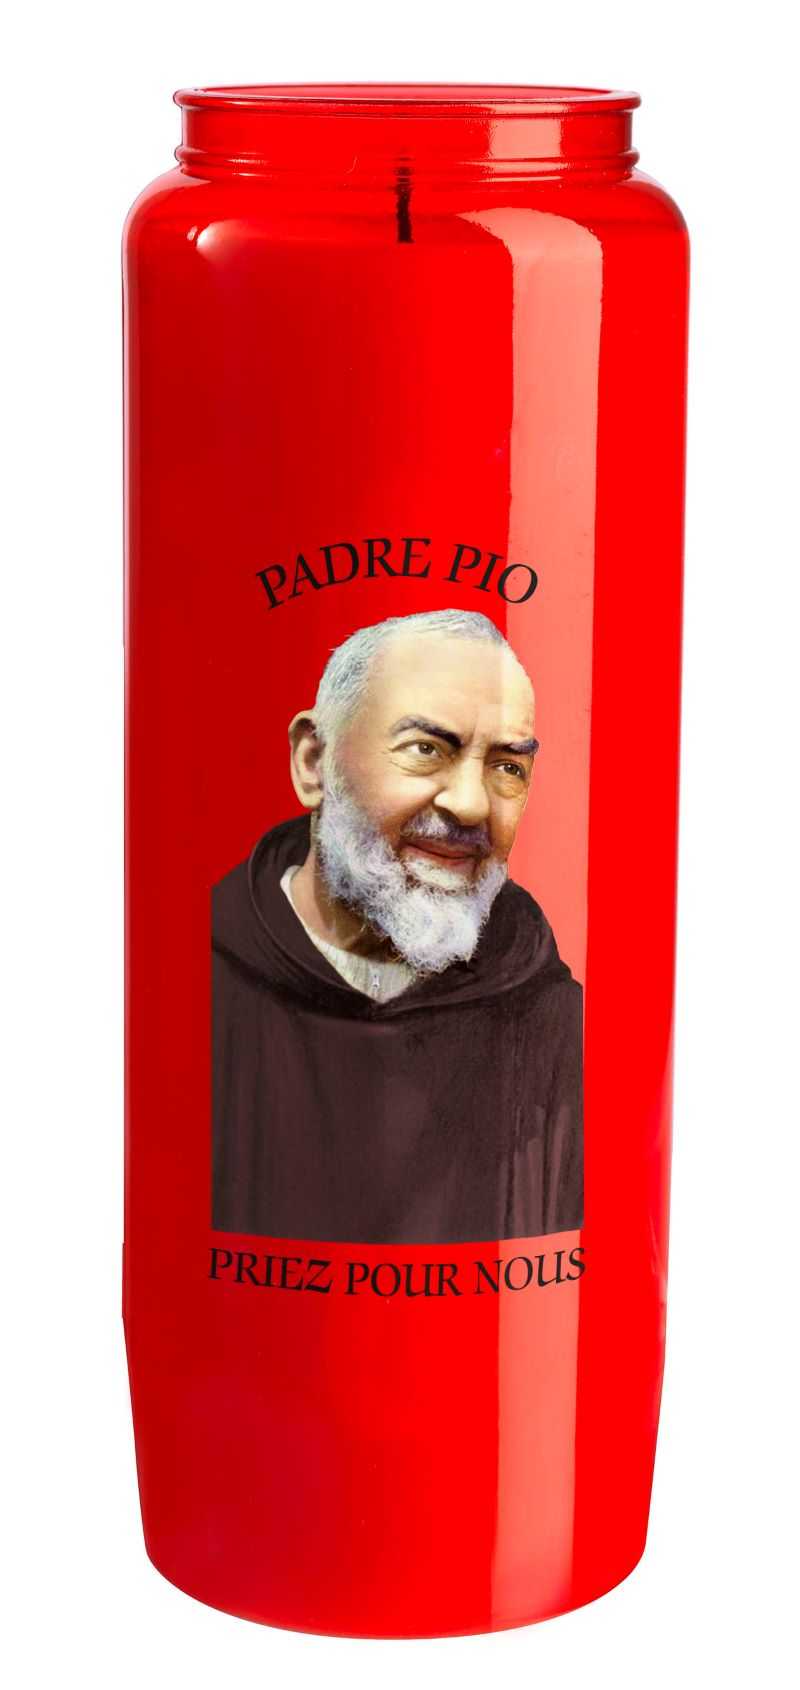 L01 Lampe neuvaine avec effigie "Padre Pio" imprimée en quadrichromie sur le godet Plastique transparent rouge et cire végétale Lampe de sanctuaire à combustible végétal solidifié Ø 6.5 cm H 18 cm 560 g Combustion 8 jours Ciergerie Desfossés